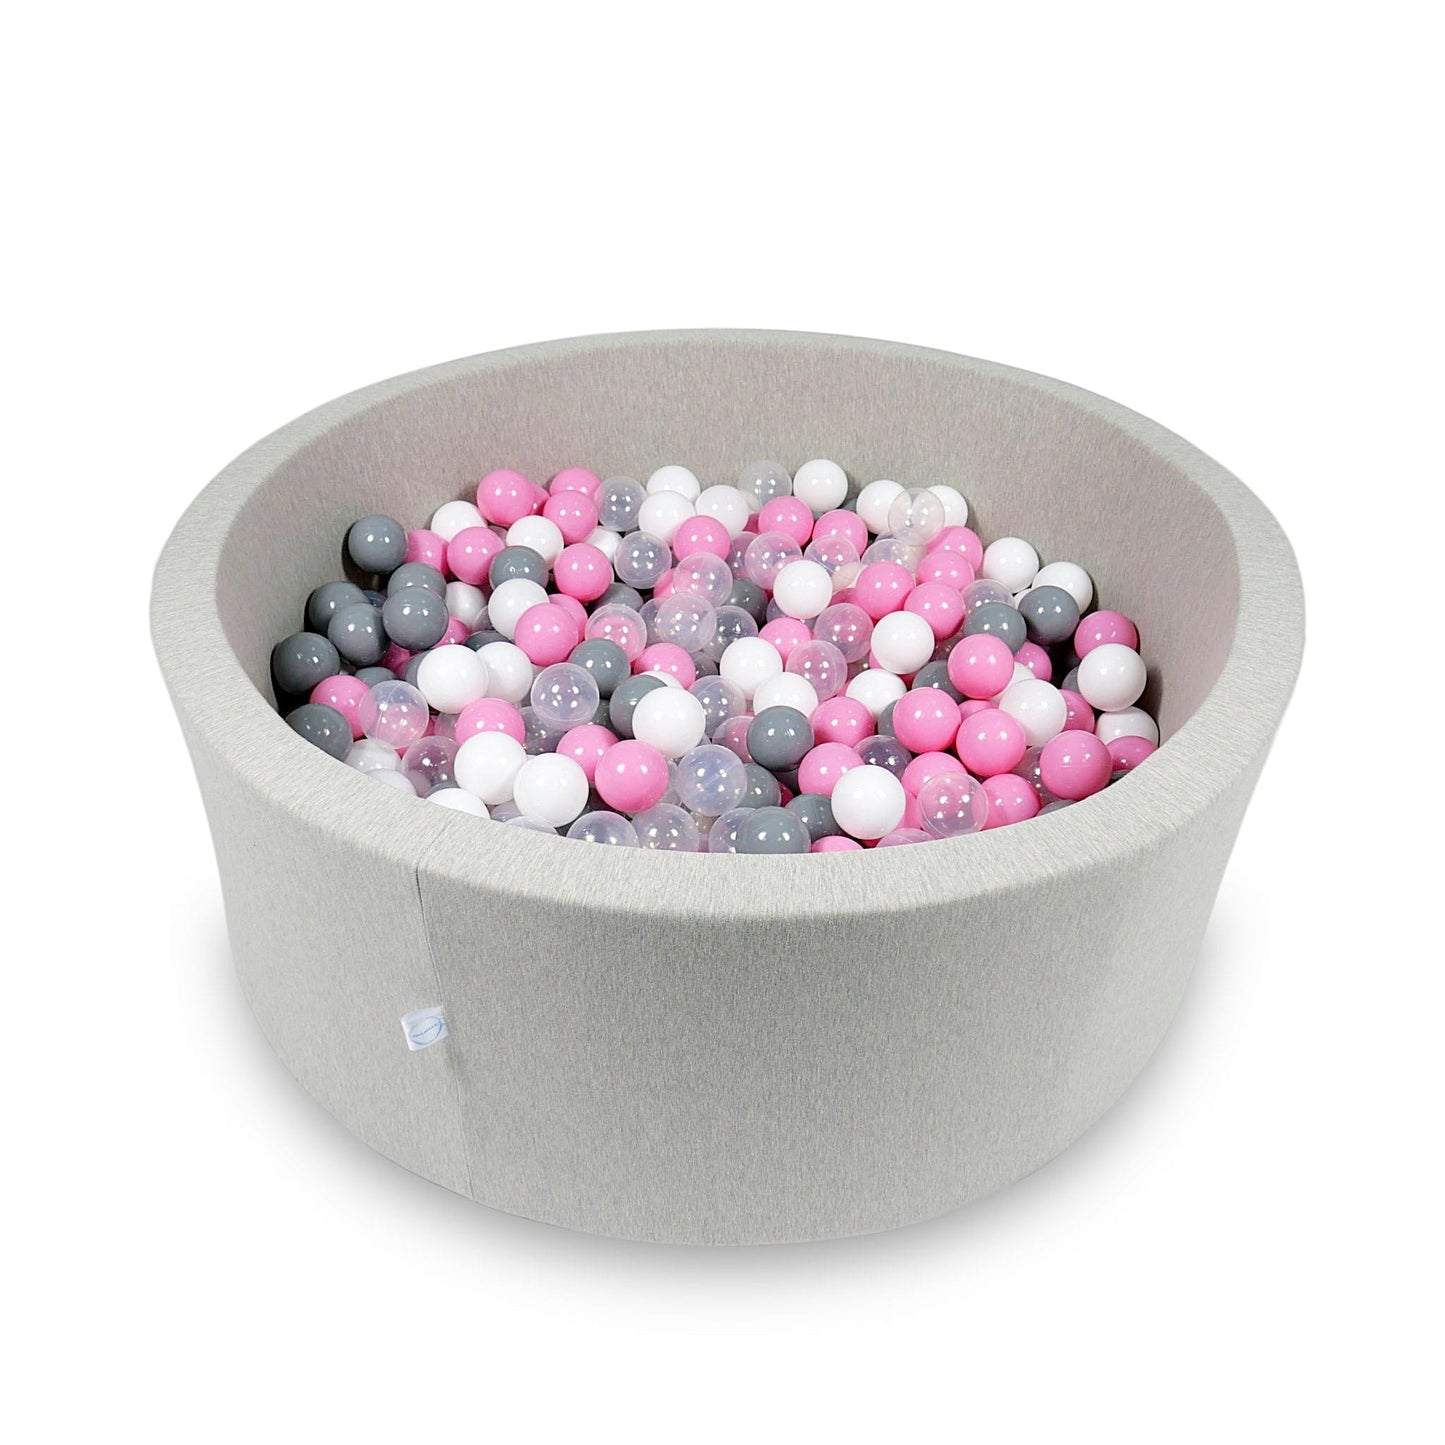 Piscine à Balles 110x40cm gris clair avec balles 500pcs (transparent, blanc, gris, rose poudré)